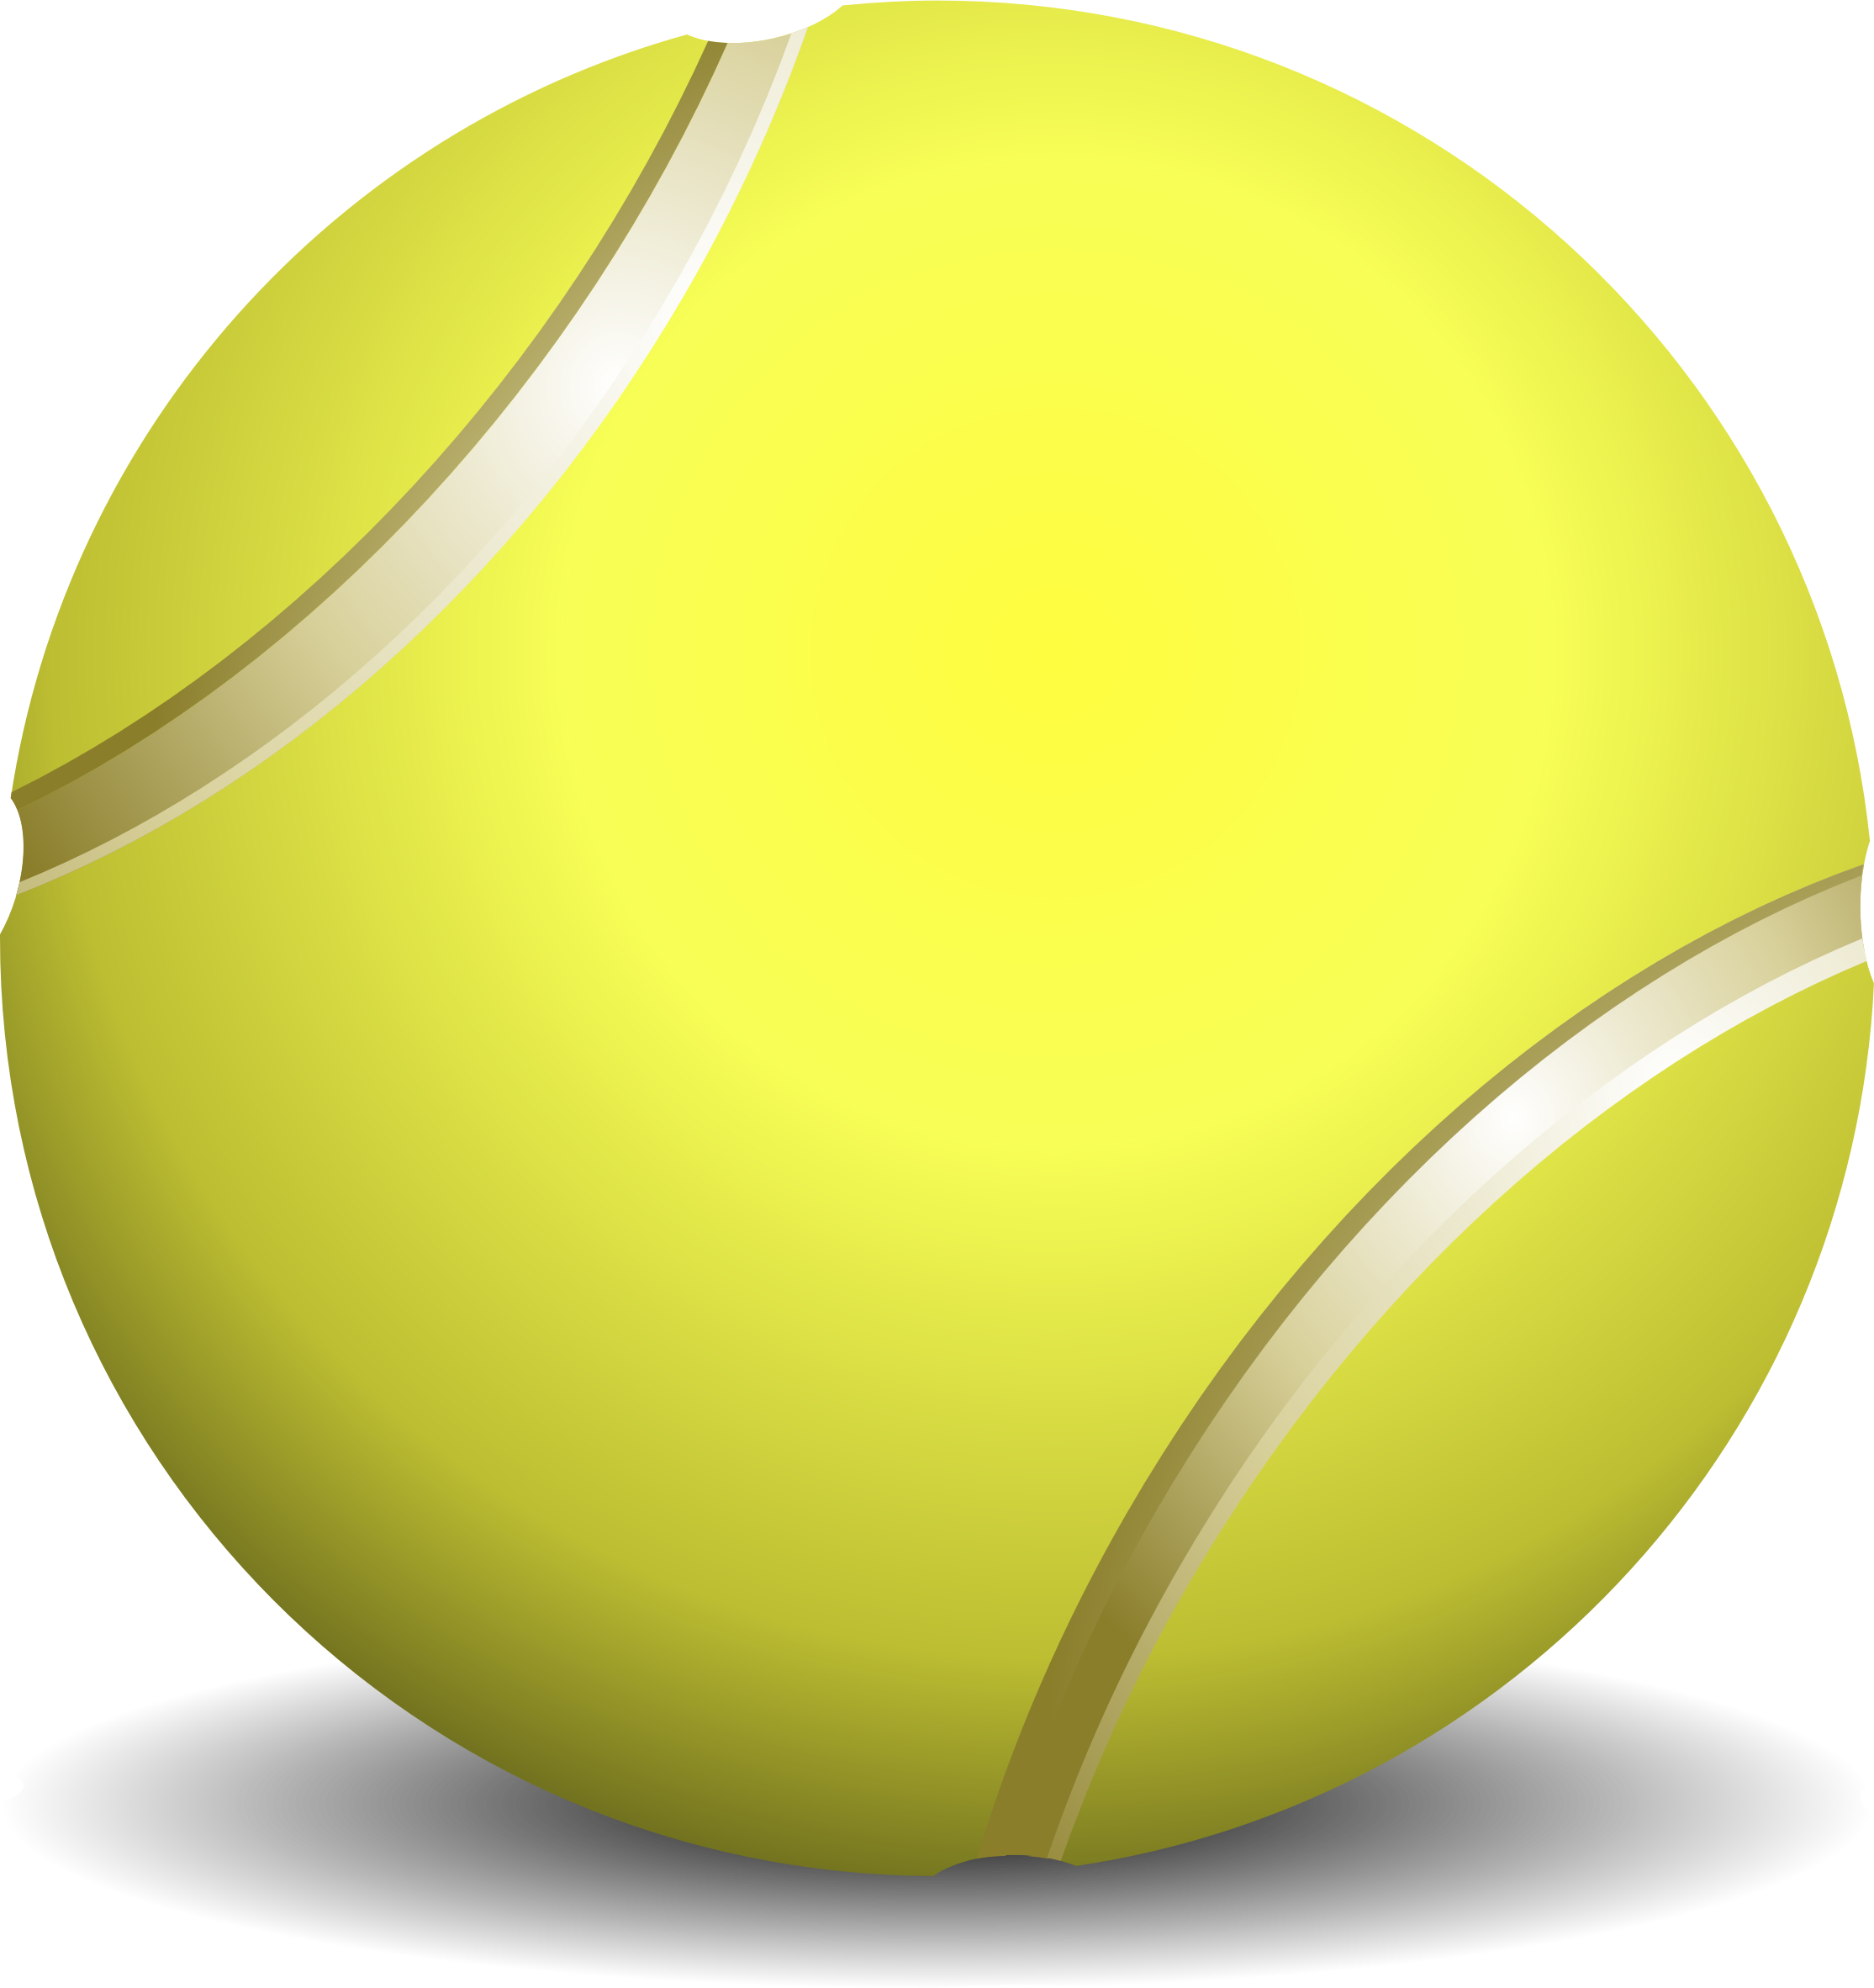 Green Tennis Ball Transparent File